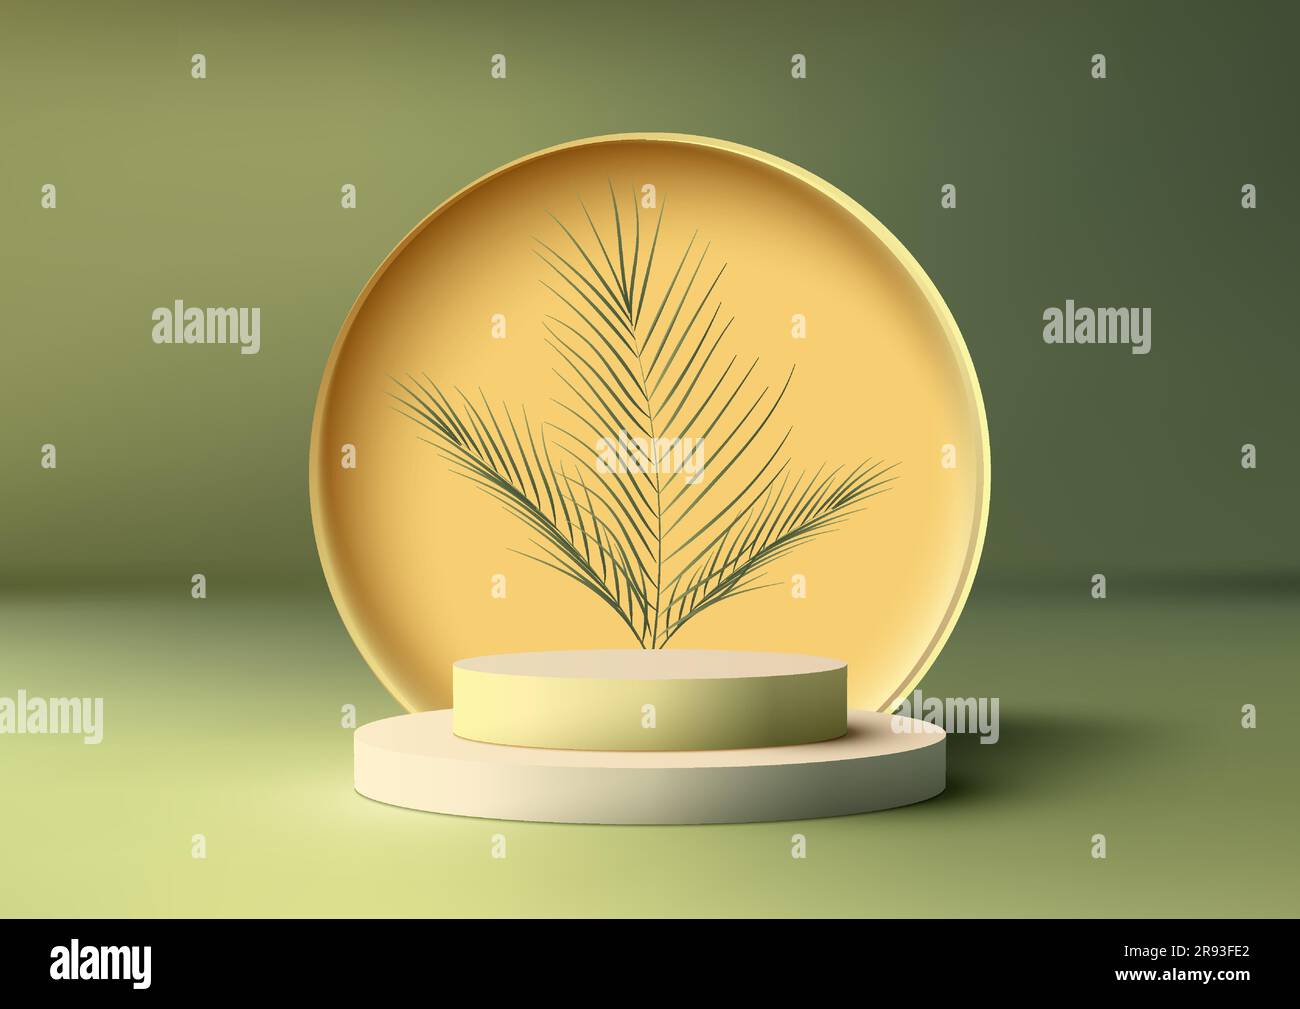 3D realistisch weißer Podiumständer mit kreisförmigem Hintergrund und tropischen Palmenblättern auf grünem Hintergrund. Produktpräsentation für Kosmetik, Ausstellungsraum, Stock Vektor